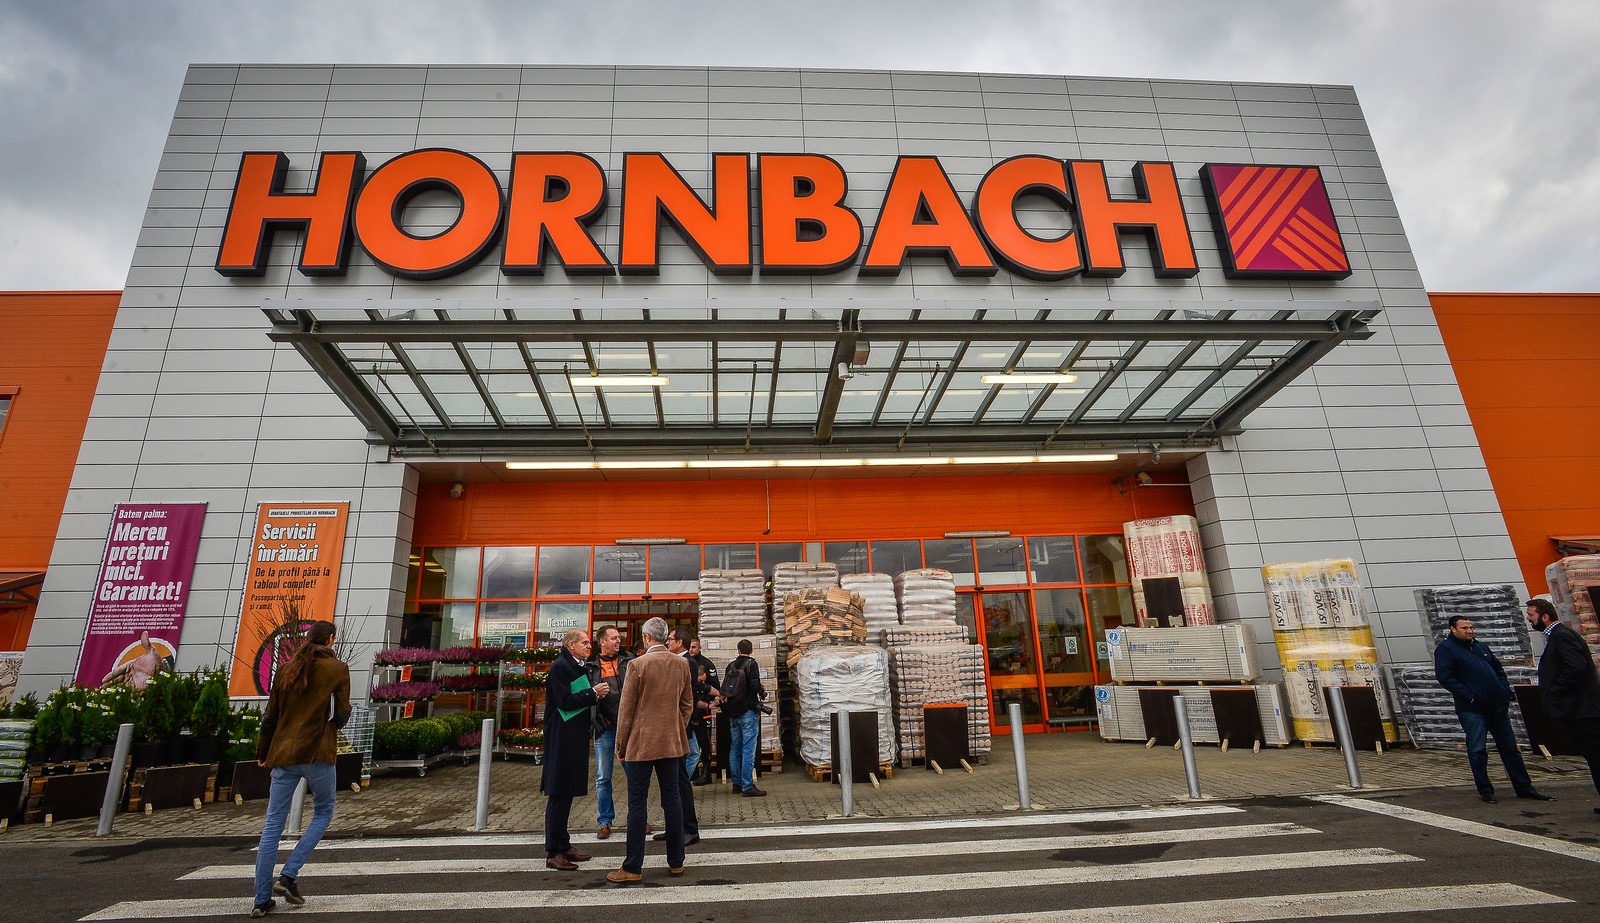 Hornbach anunță afaceri de peste 3,3 miliarde de euro. Compania face angajări la Sibiu